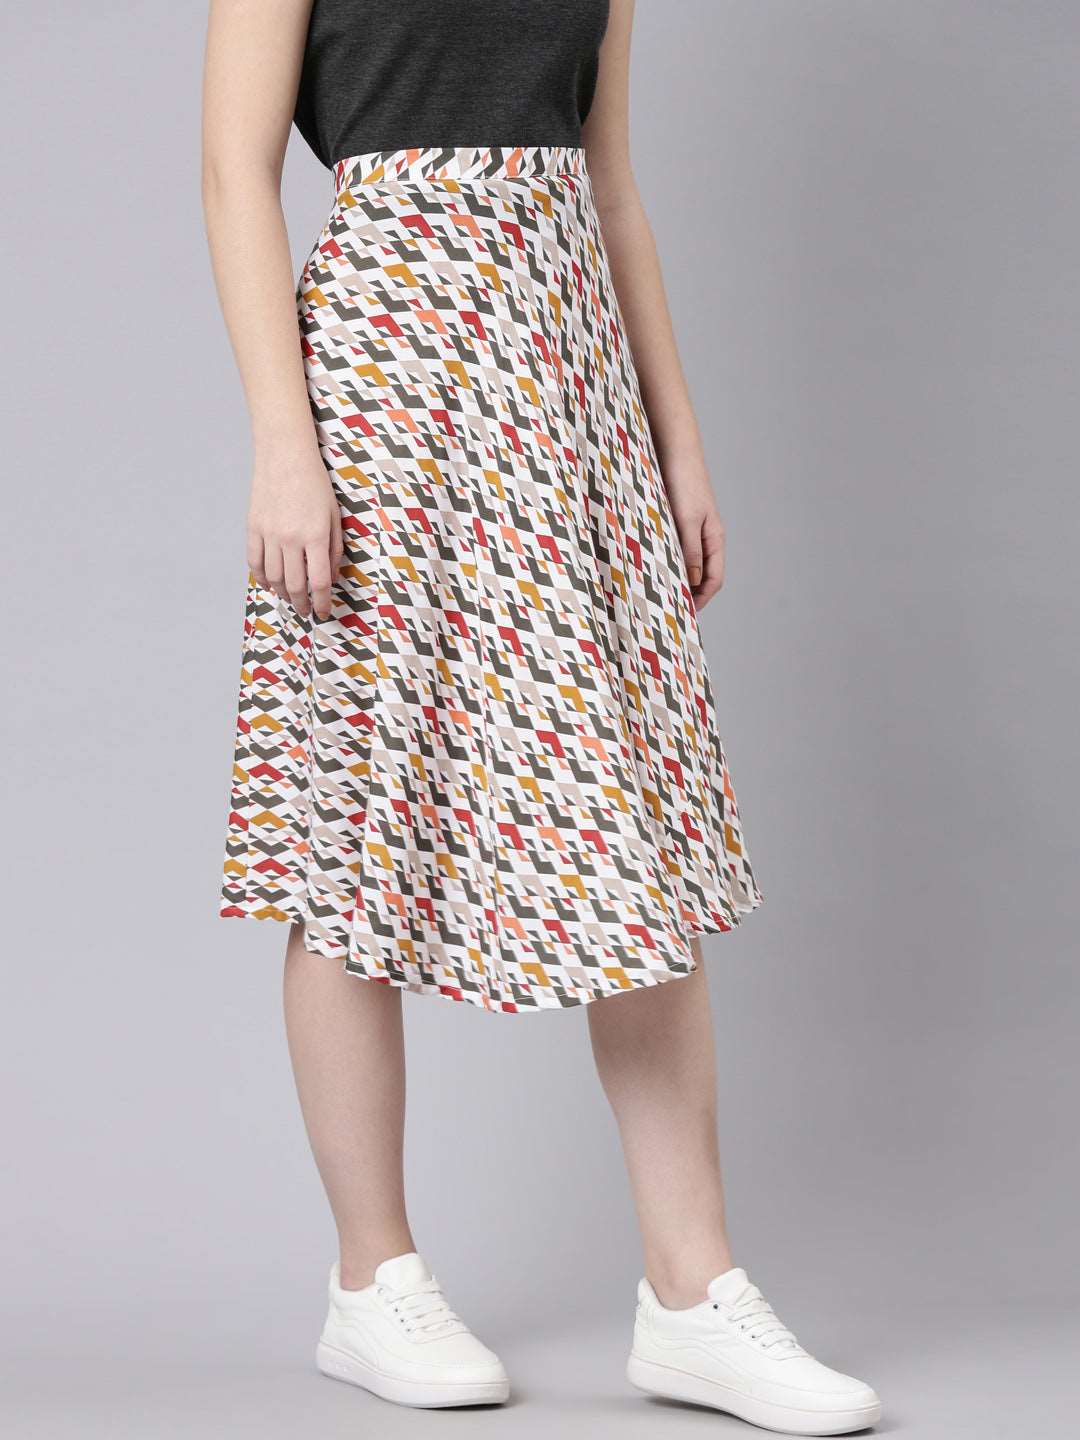 Buy TheShaili Knee Length Midi Skirt for Women's & Girls on online at just RS 799